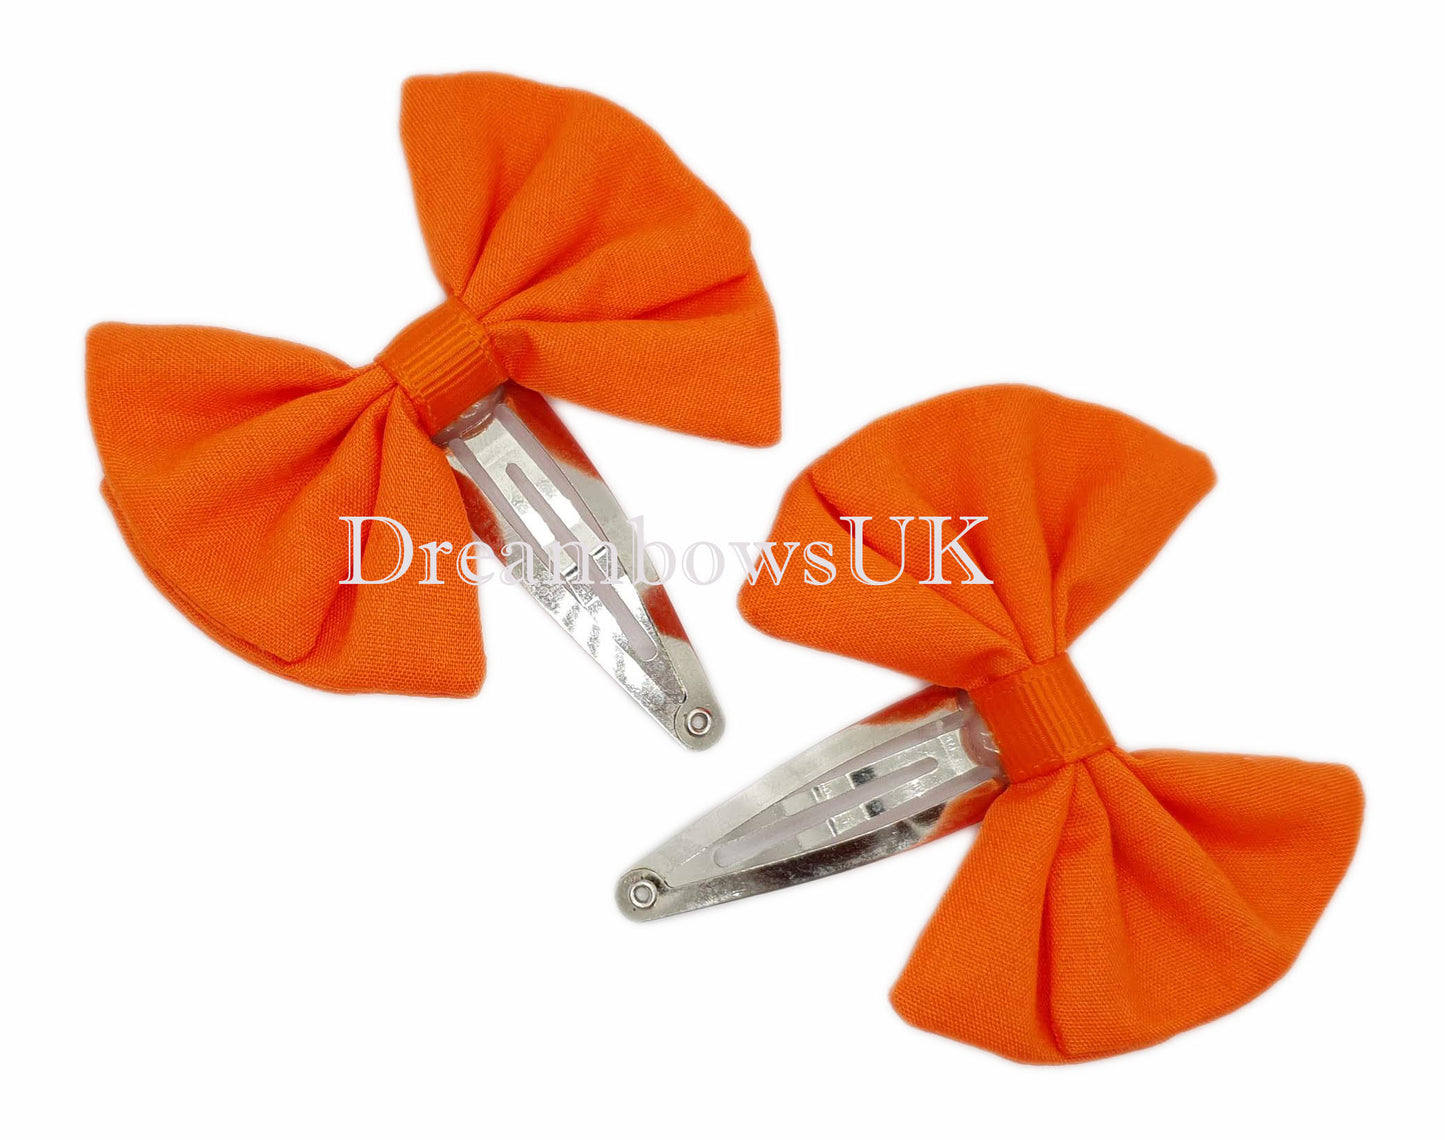 2x Orange fabric hair bows